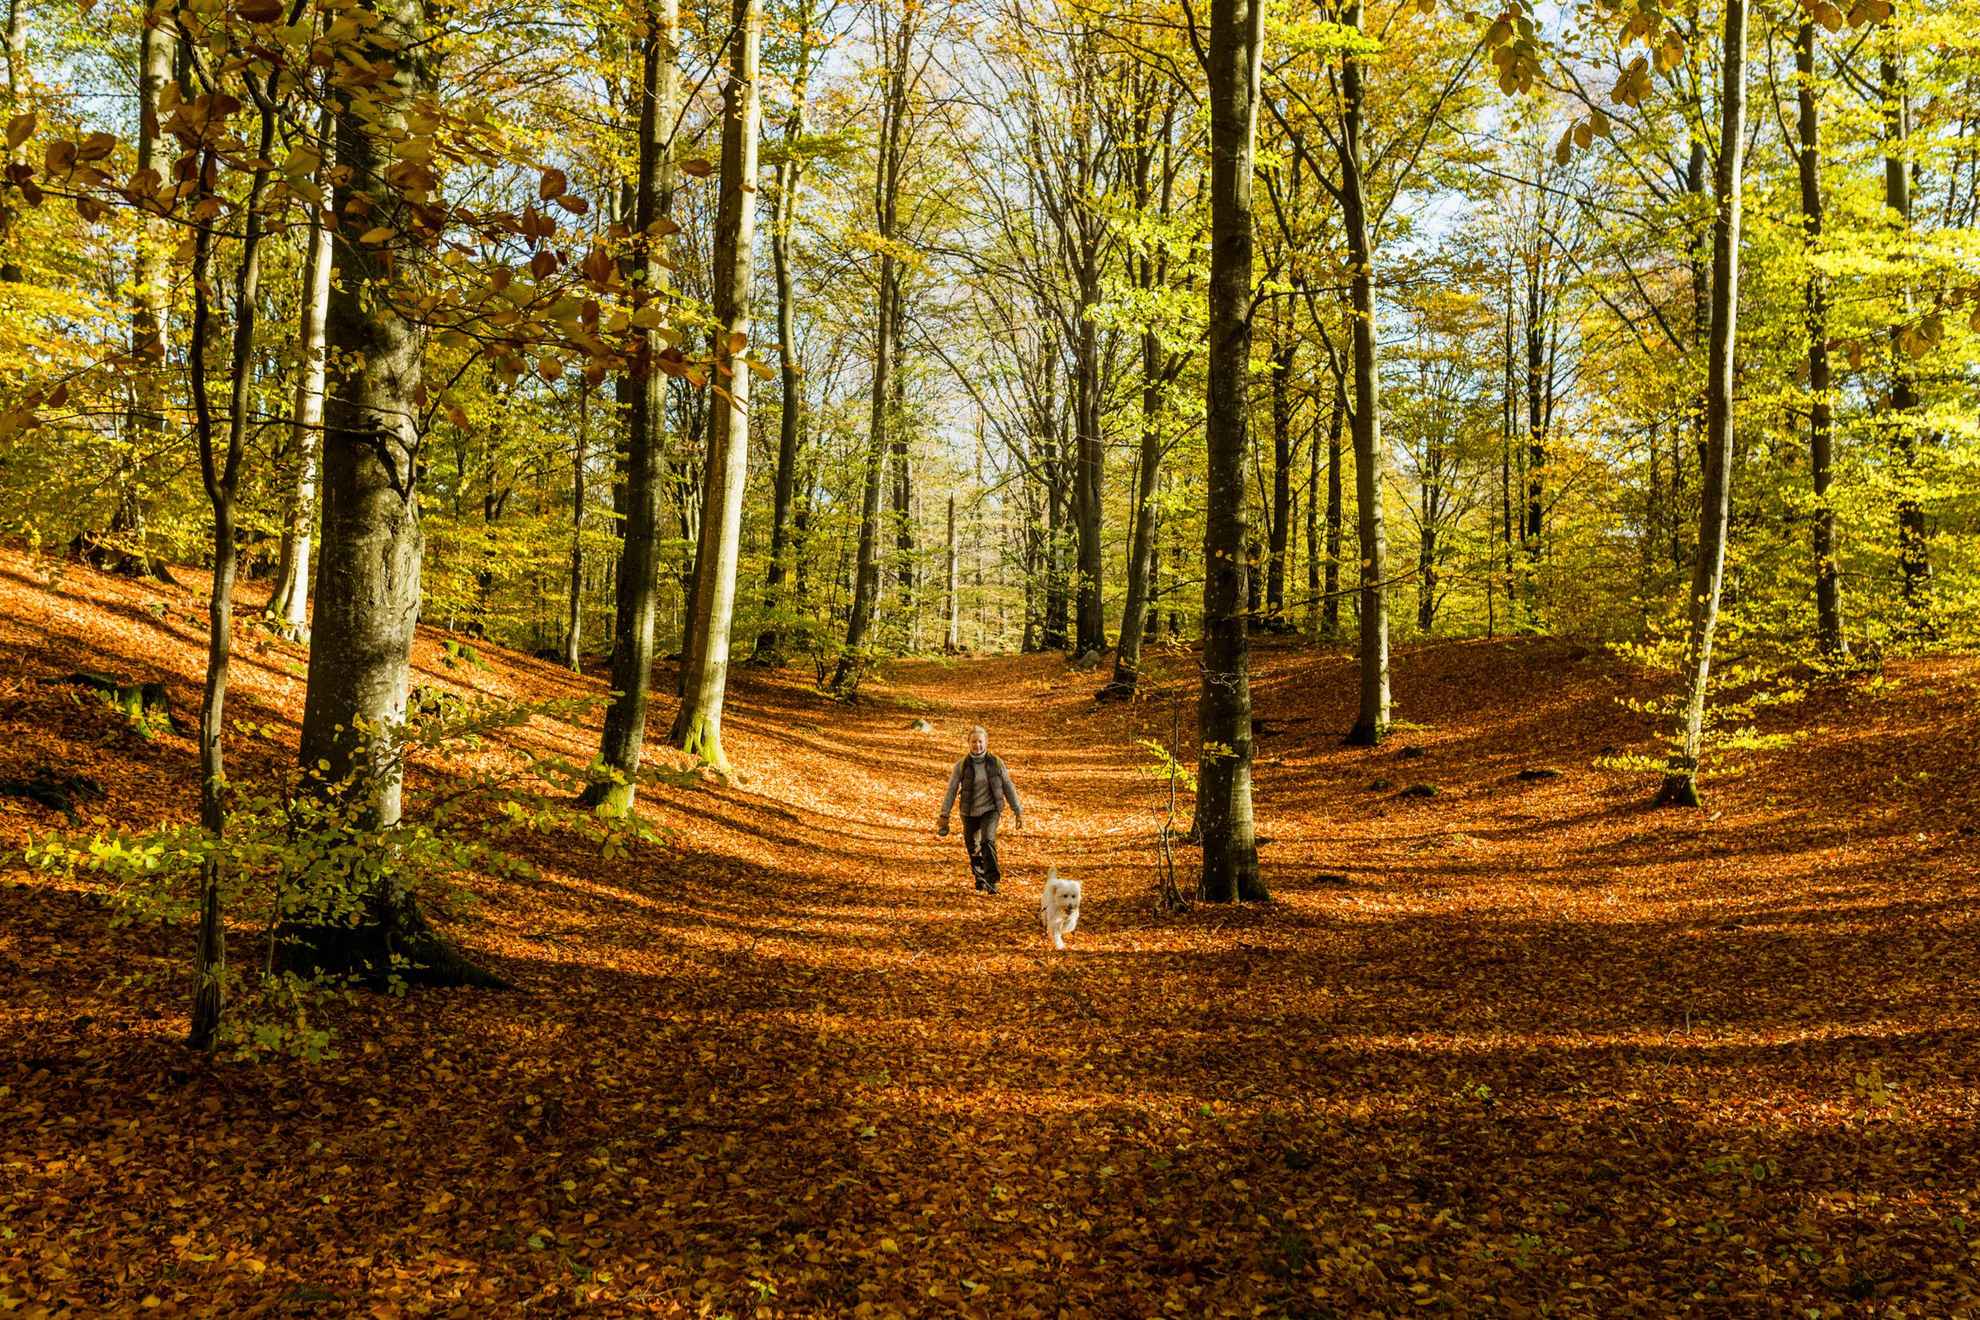 Une femme et un chien se promènent sur un sentier dans une forêt en automne. Le soleil brille et le sol est couvert de feuilles orange.